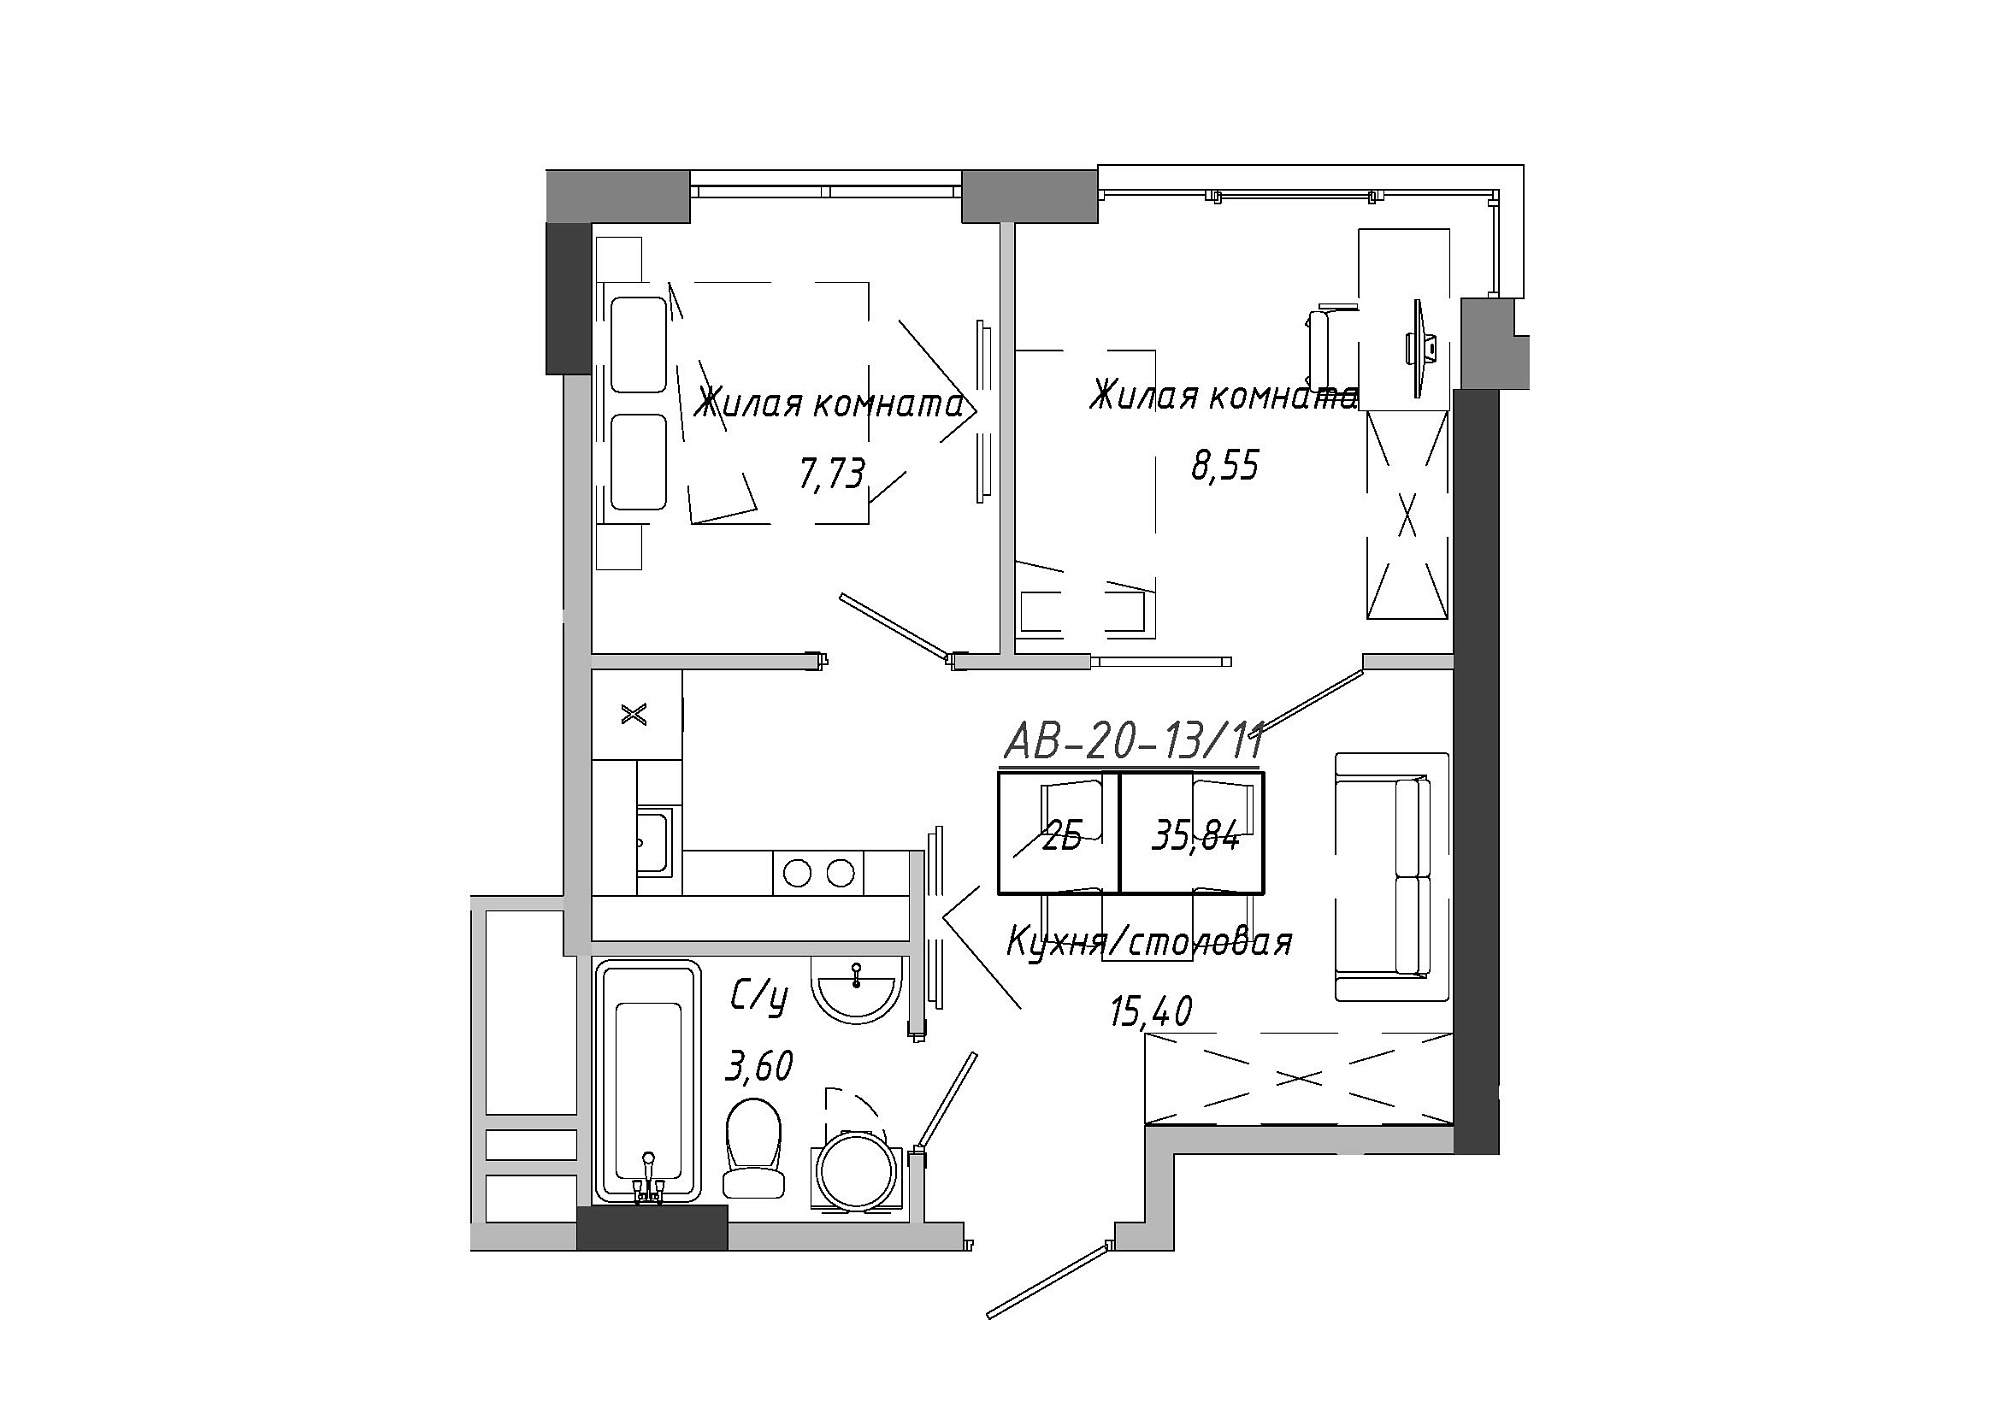 Планировка 2-к квартира площей 35.84м2, AB-20-13/00111.